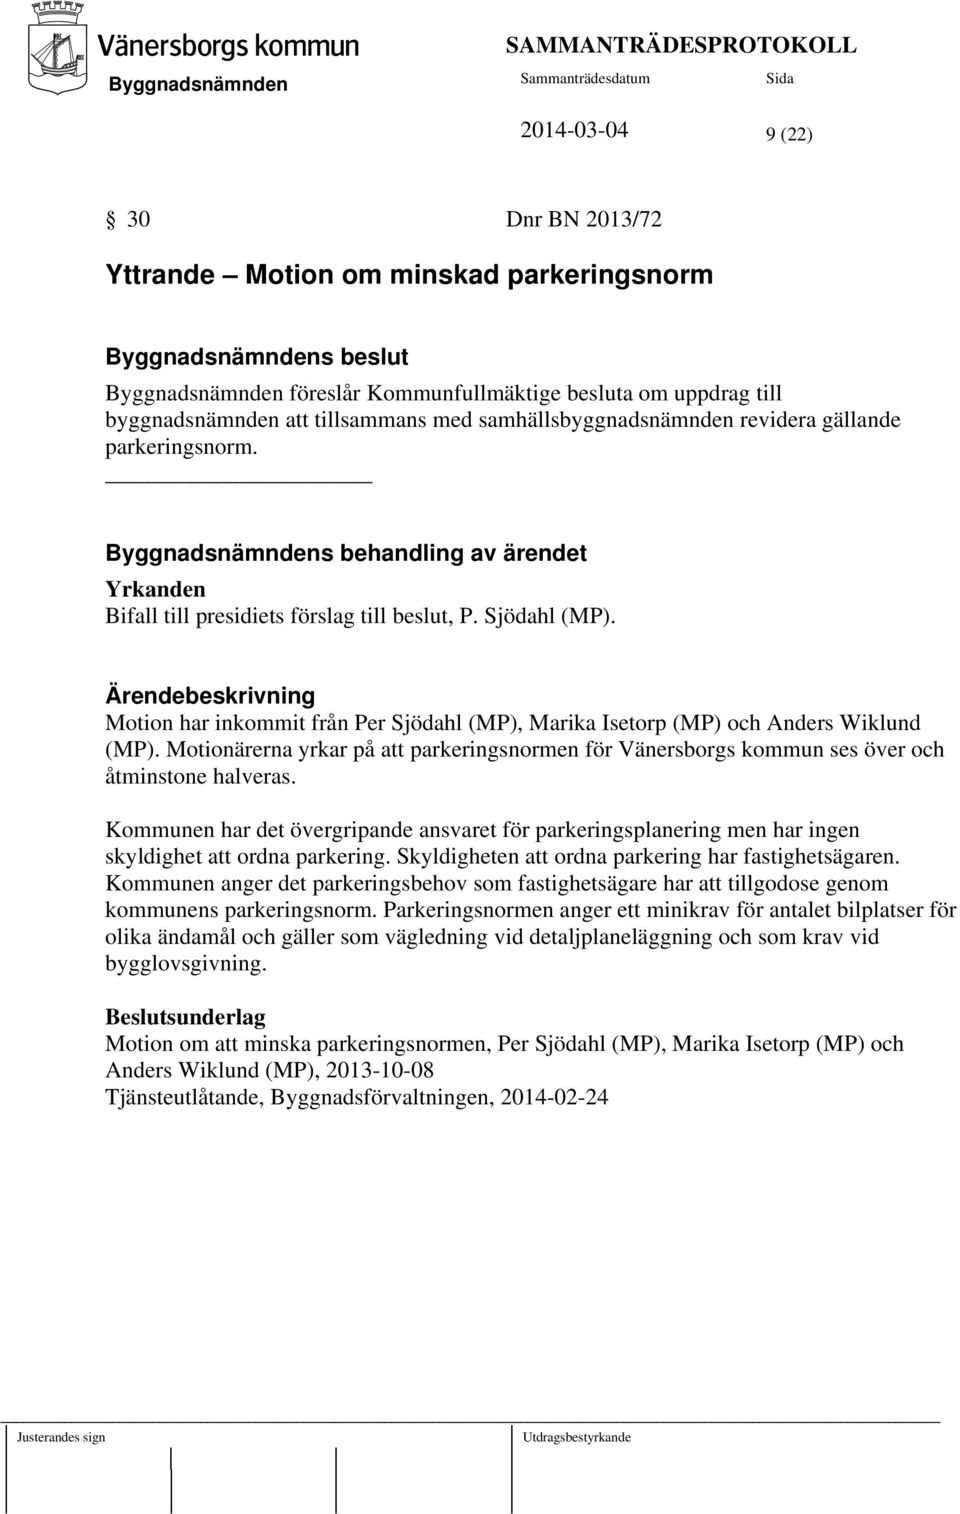 Motion har inkommit från Per Sjödahl (MP), Marika Isetorp (MP) och Anders Wiklund (MP). Motionärerna yrkar på att parkeringsnormen för Vänersborgs kommun ses över och åtminstone halveras.